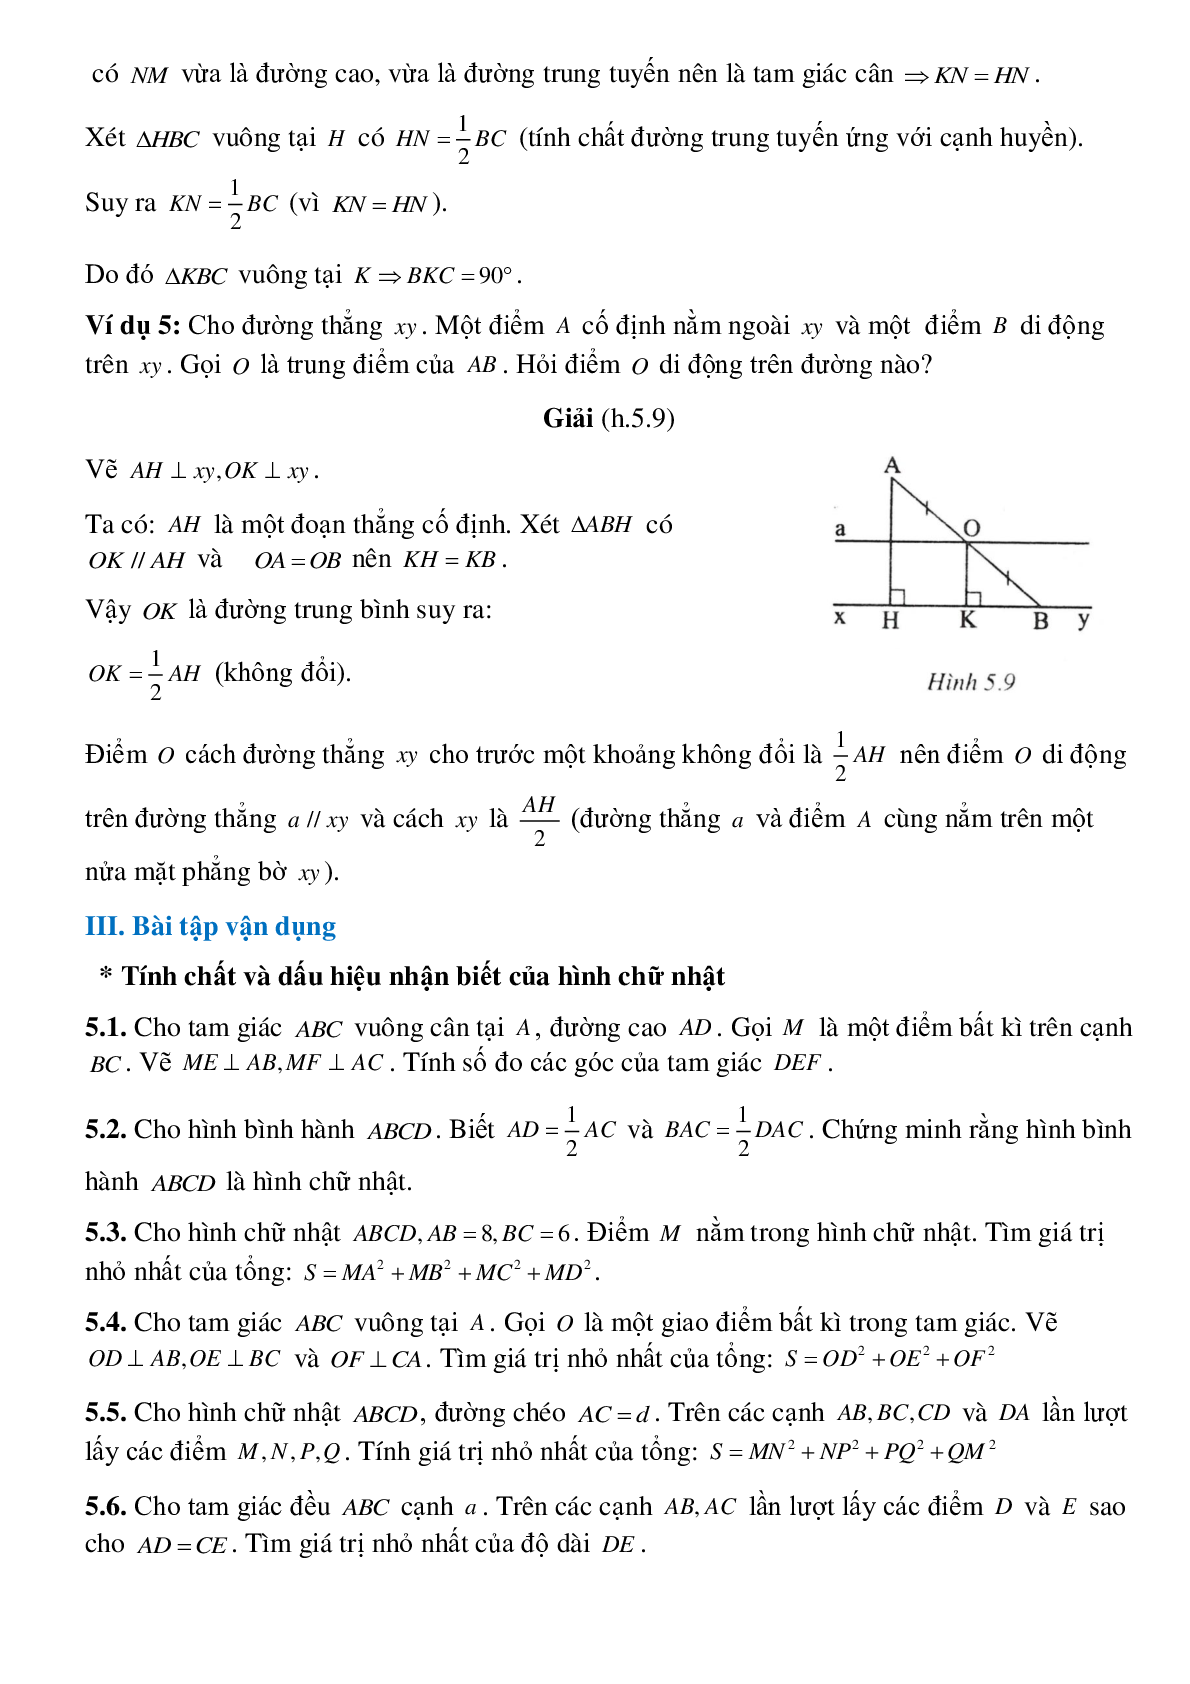 Hình chữ nhật, tính chất của các điểm cách đều một đường thẳng cho trước (trang 4)